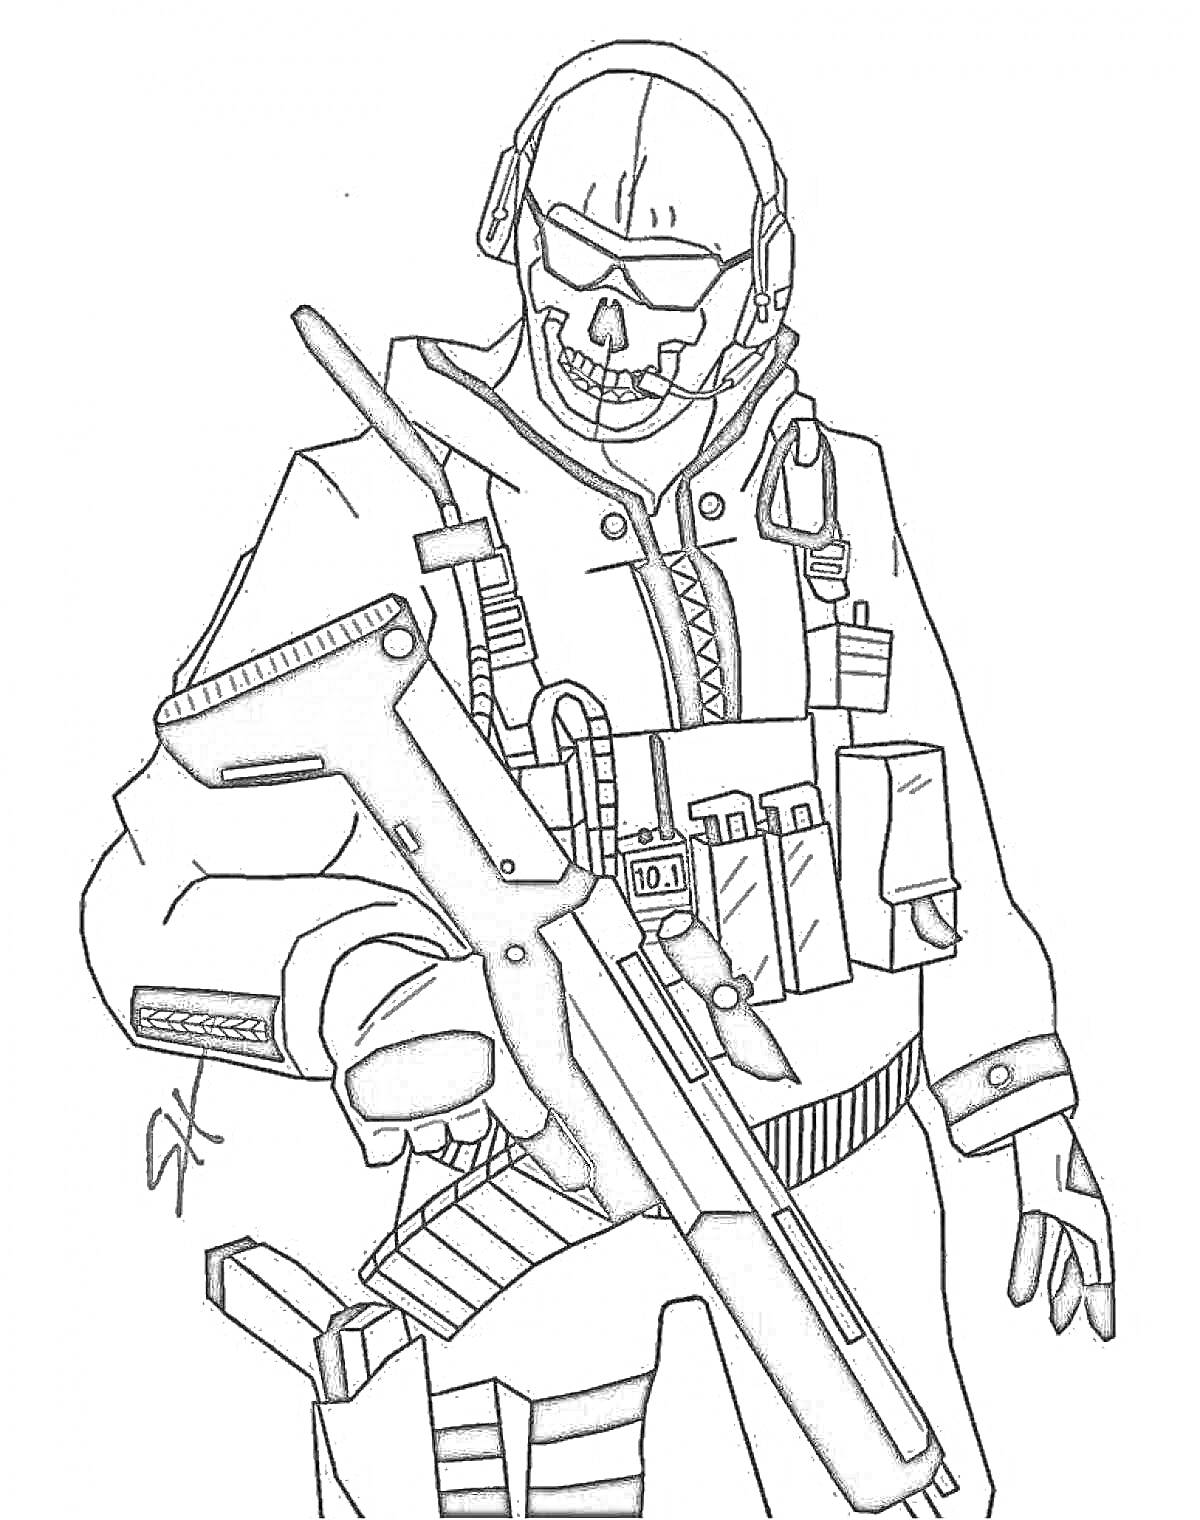 Солдат в боевом снаряжении с винтовкой, черепной маской и очками